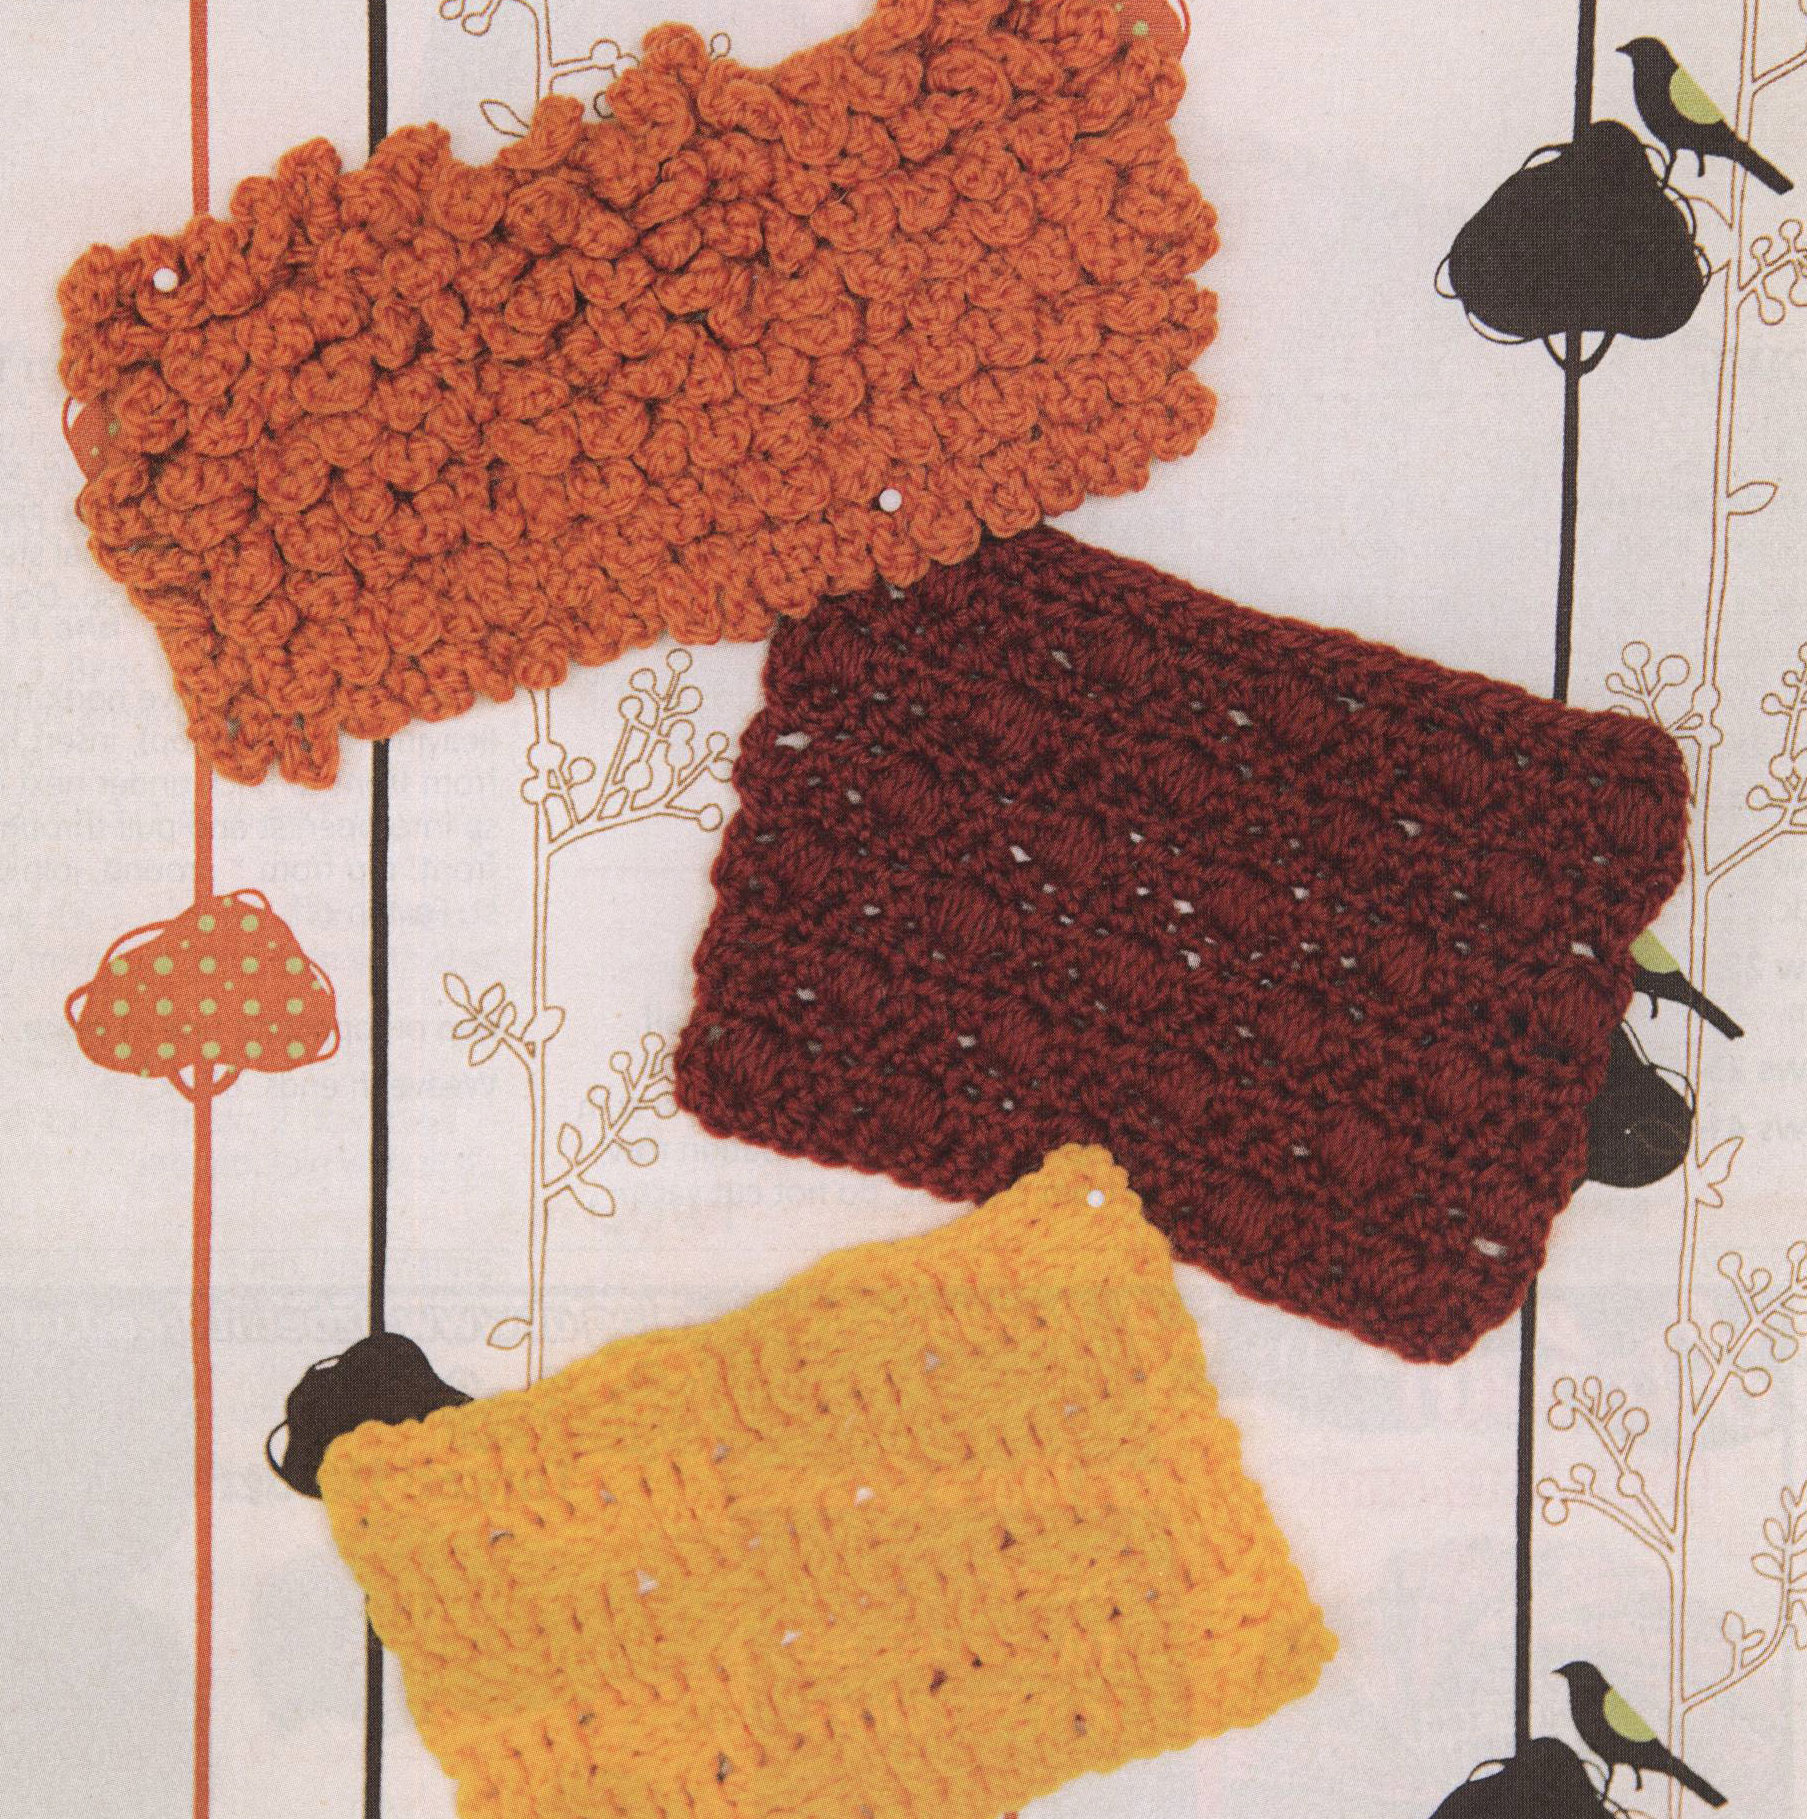 Textured-Crochet-Stitches ⋆ Crochet Kingdom